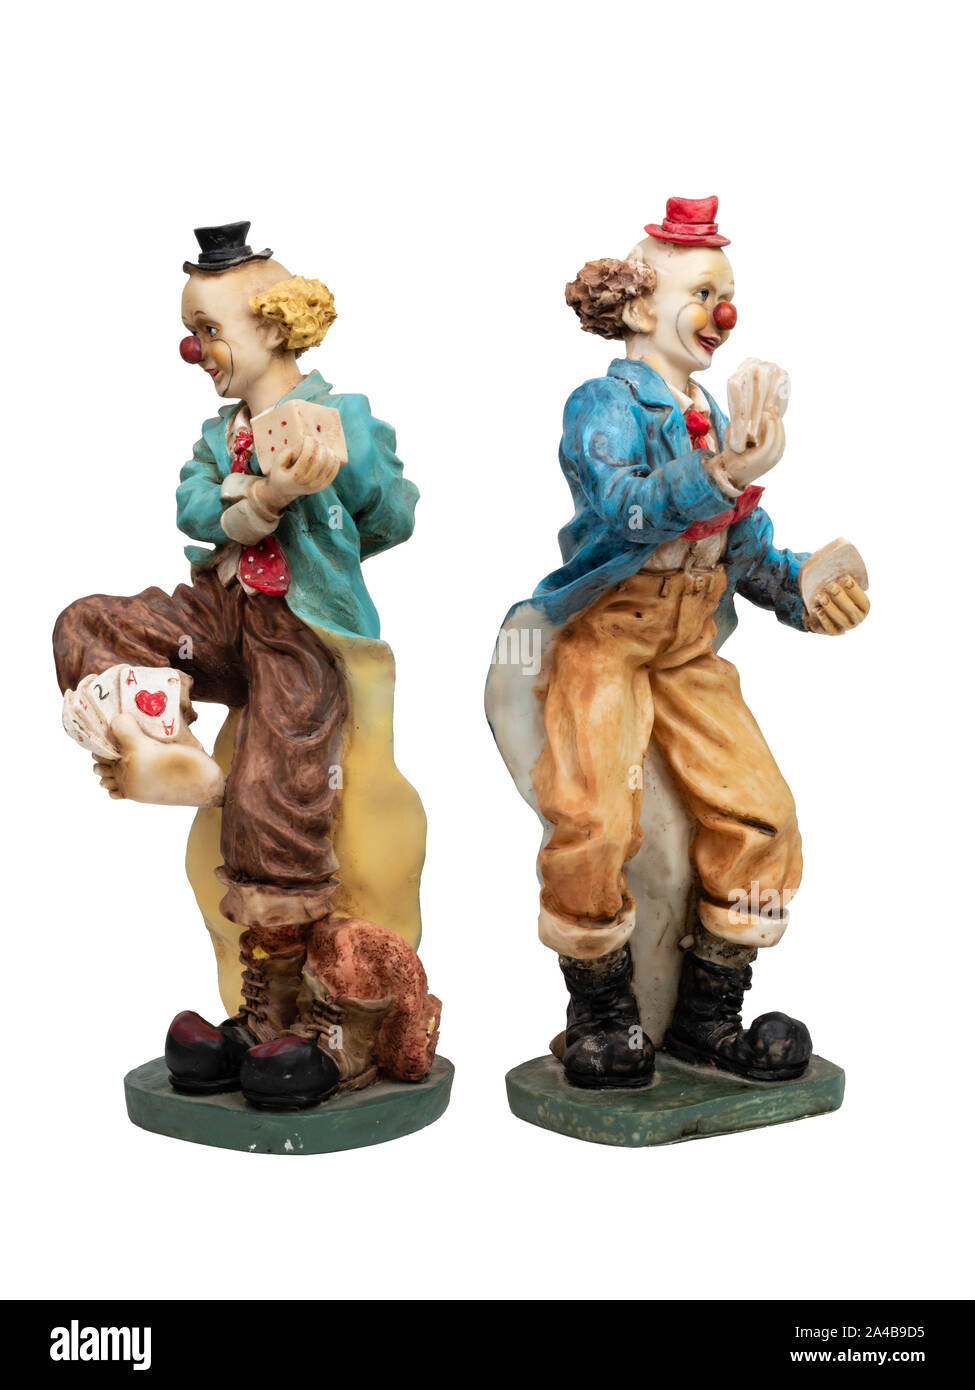 Résine peinte paire de dés et de cartes à jouer figurines clown jonglant sur un fond blanc Banque D'Images